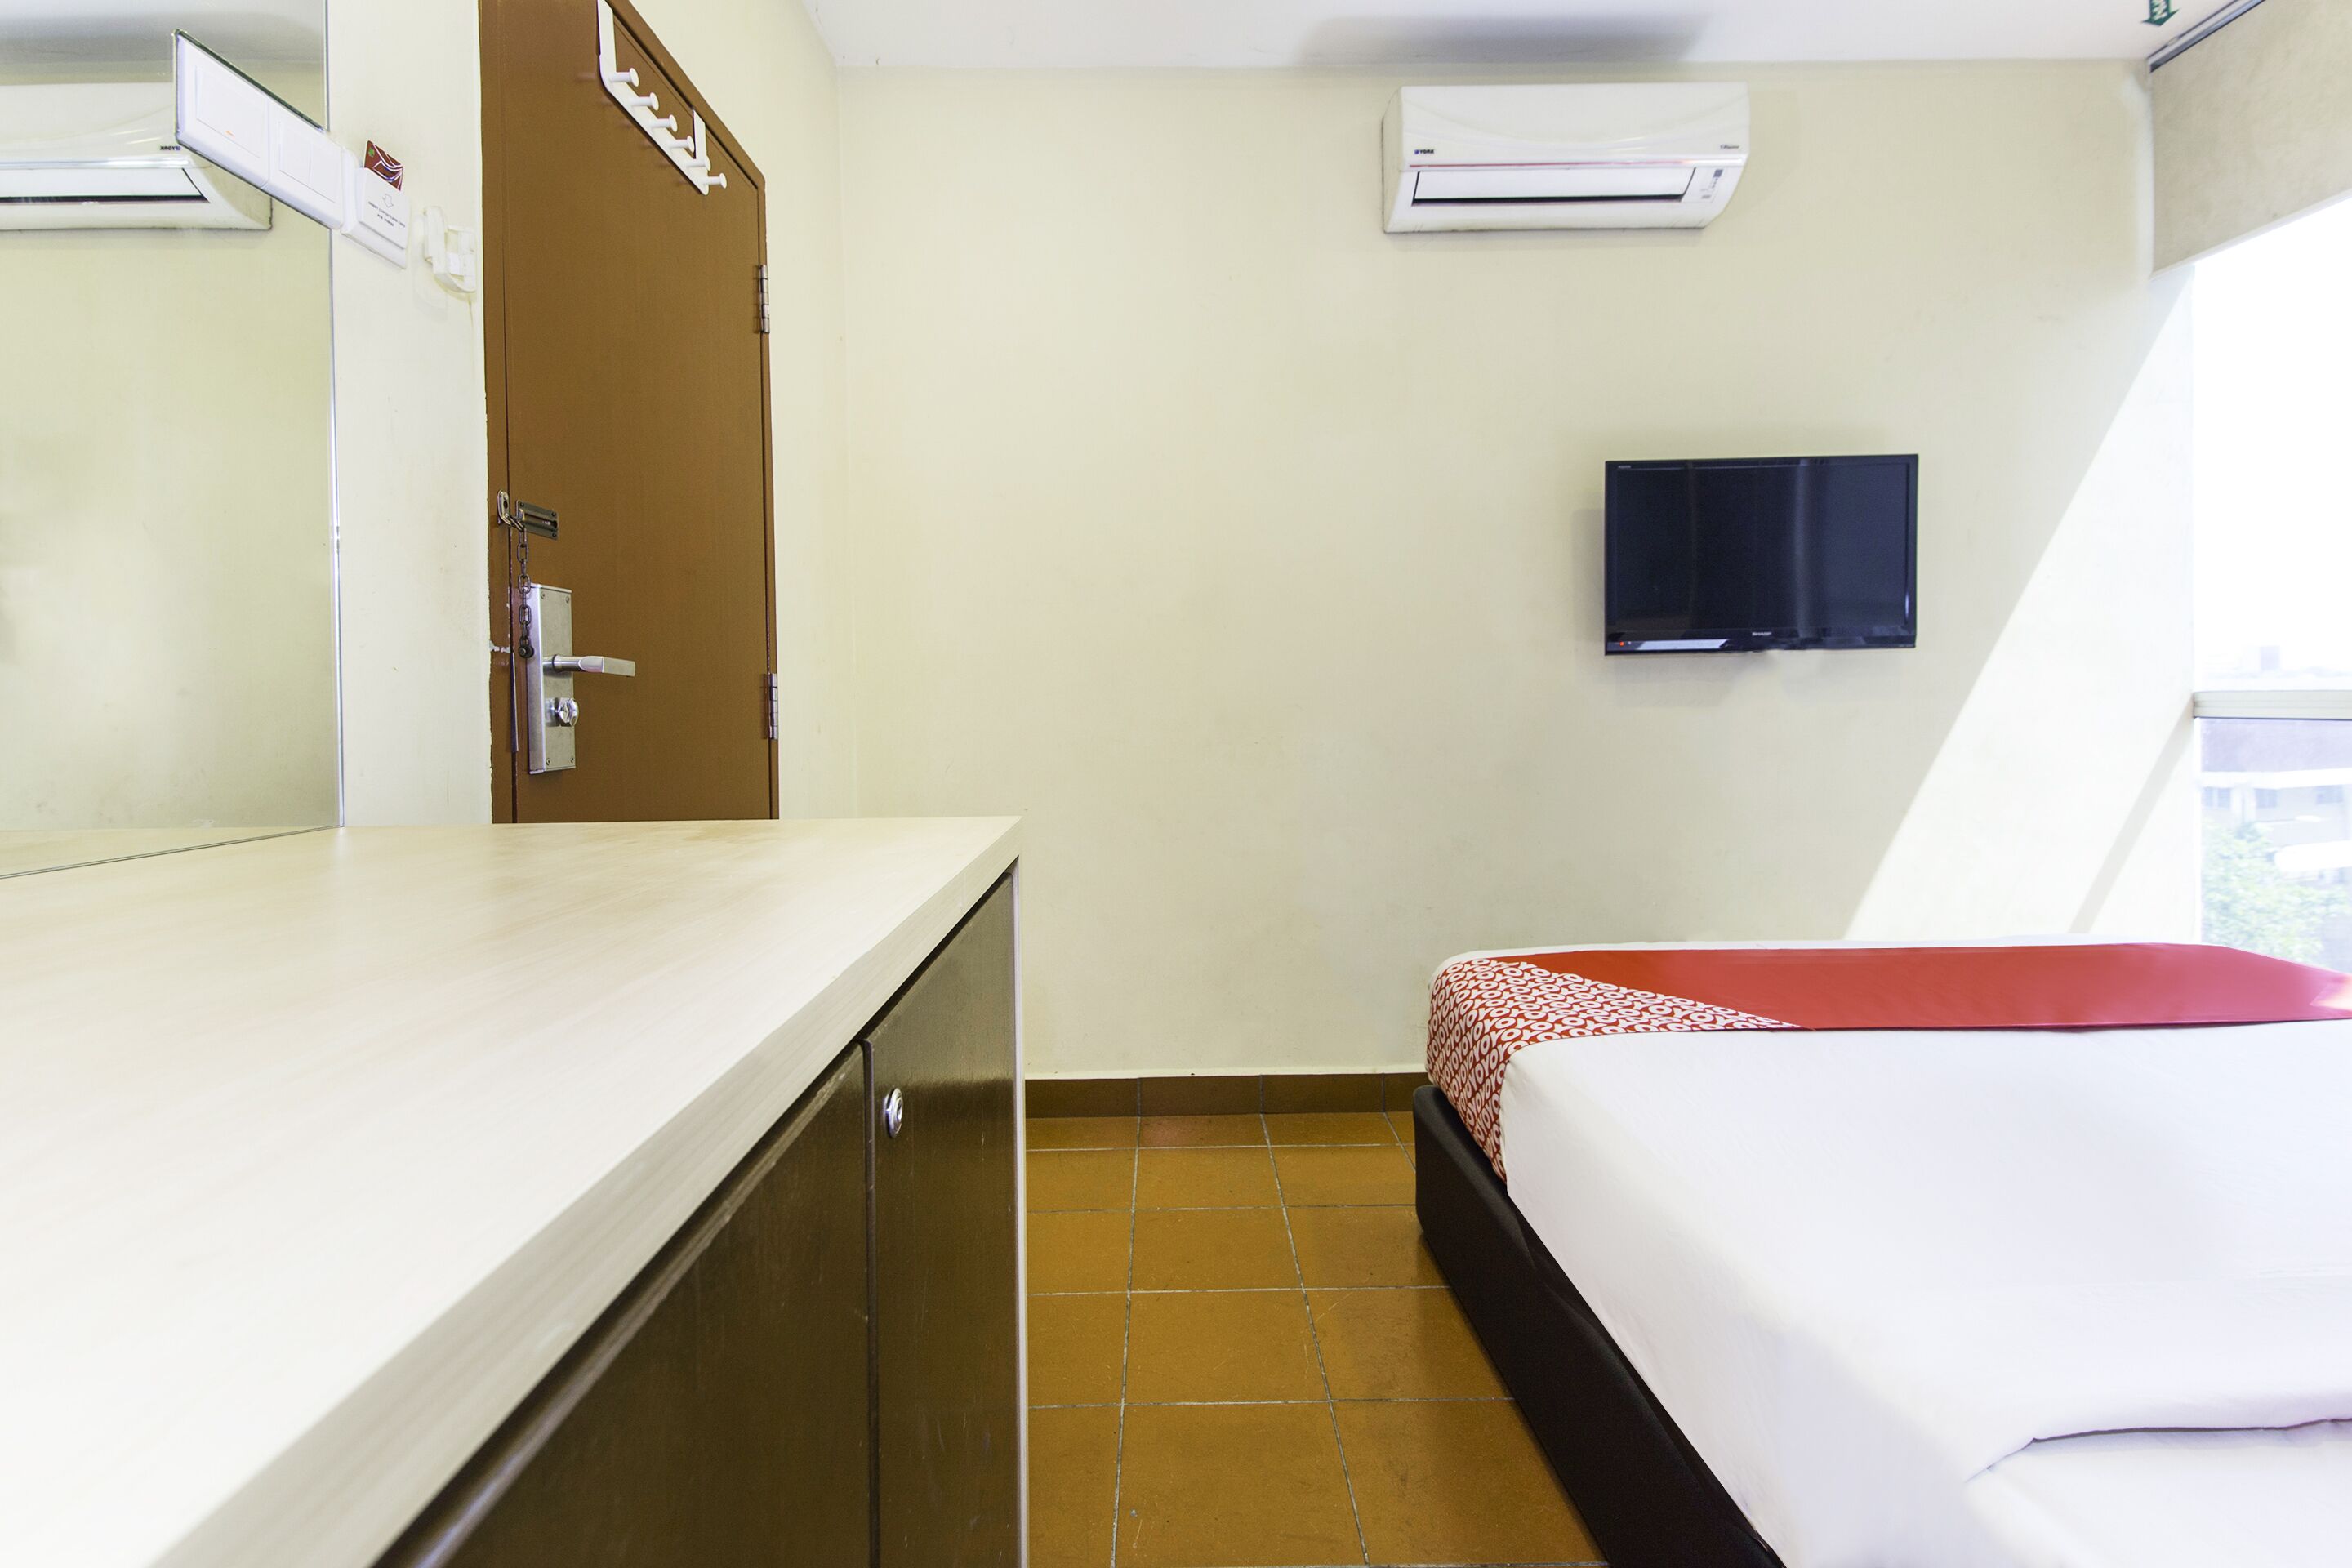 Hotel Narasindo by Oyo Rooms